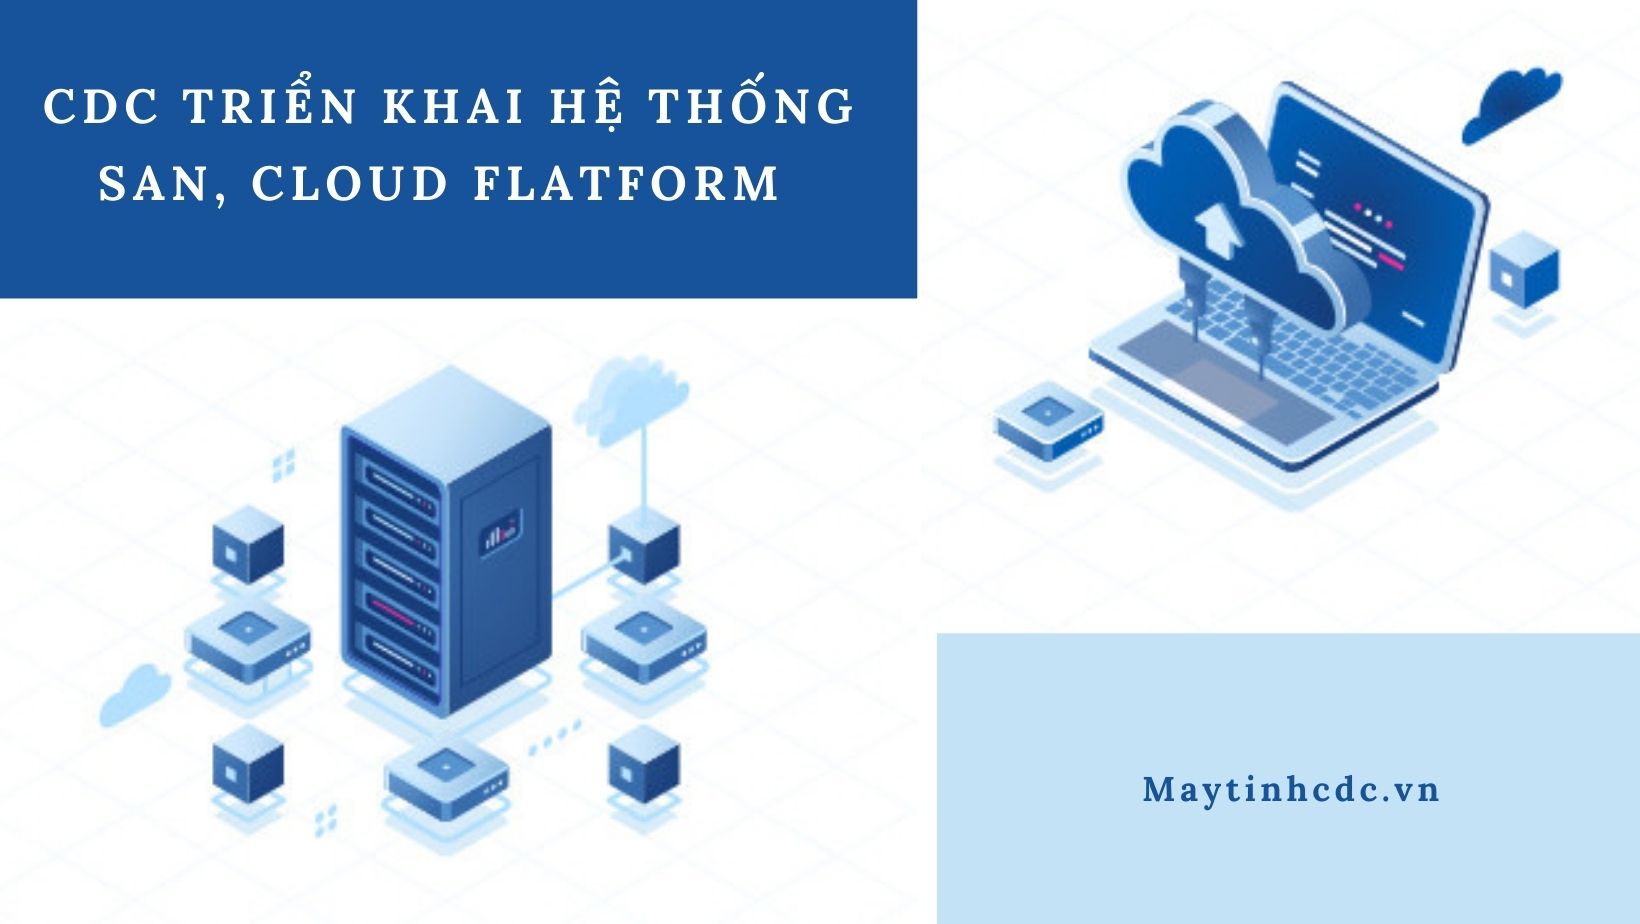 Maytinhcdc.vn triển khai hệ thống SAN, Cloud flatform tại MobiFone 